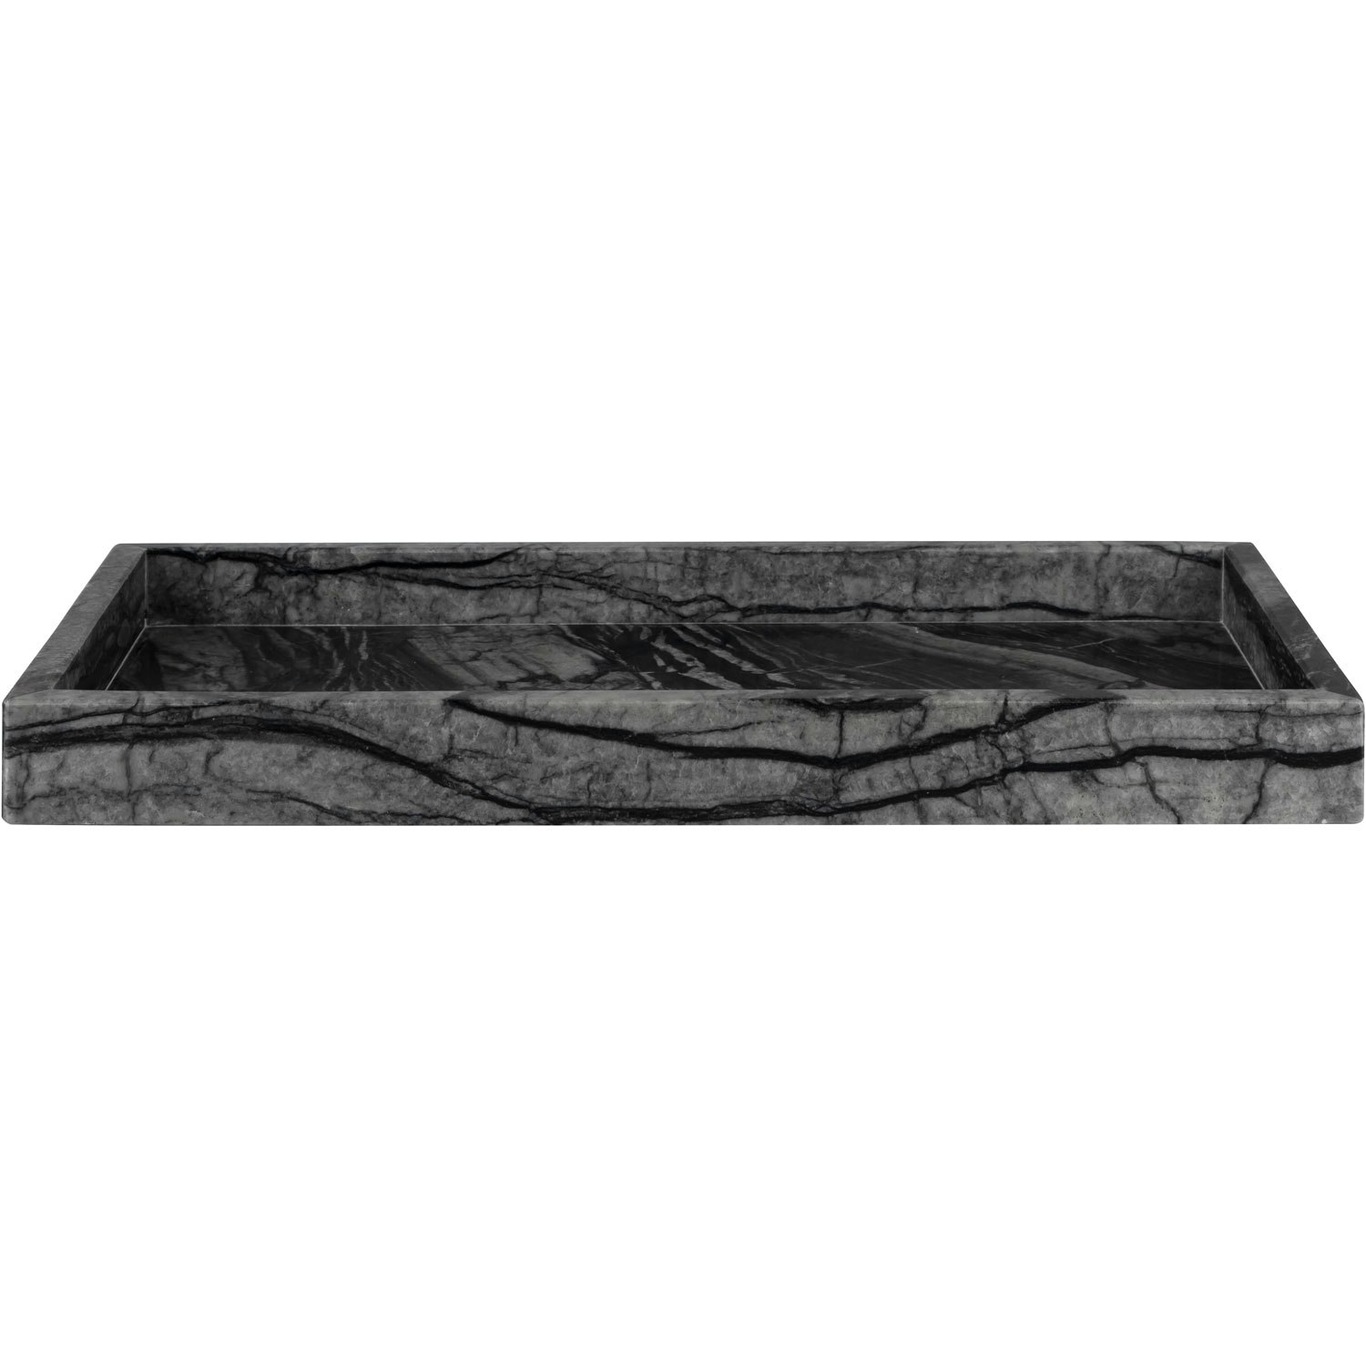 MARBLE Tray 16x31 cm, Black/Grey